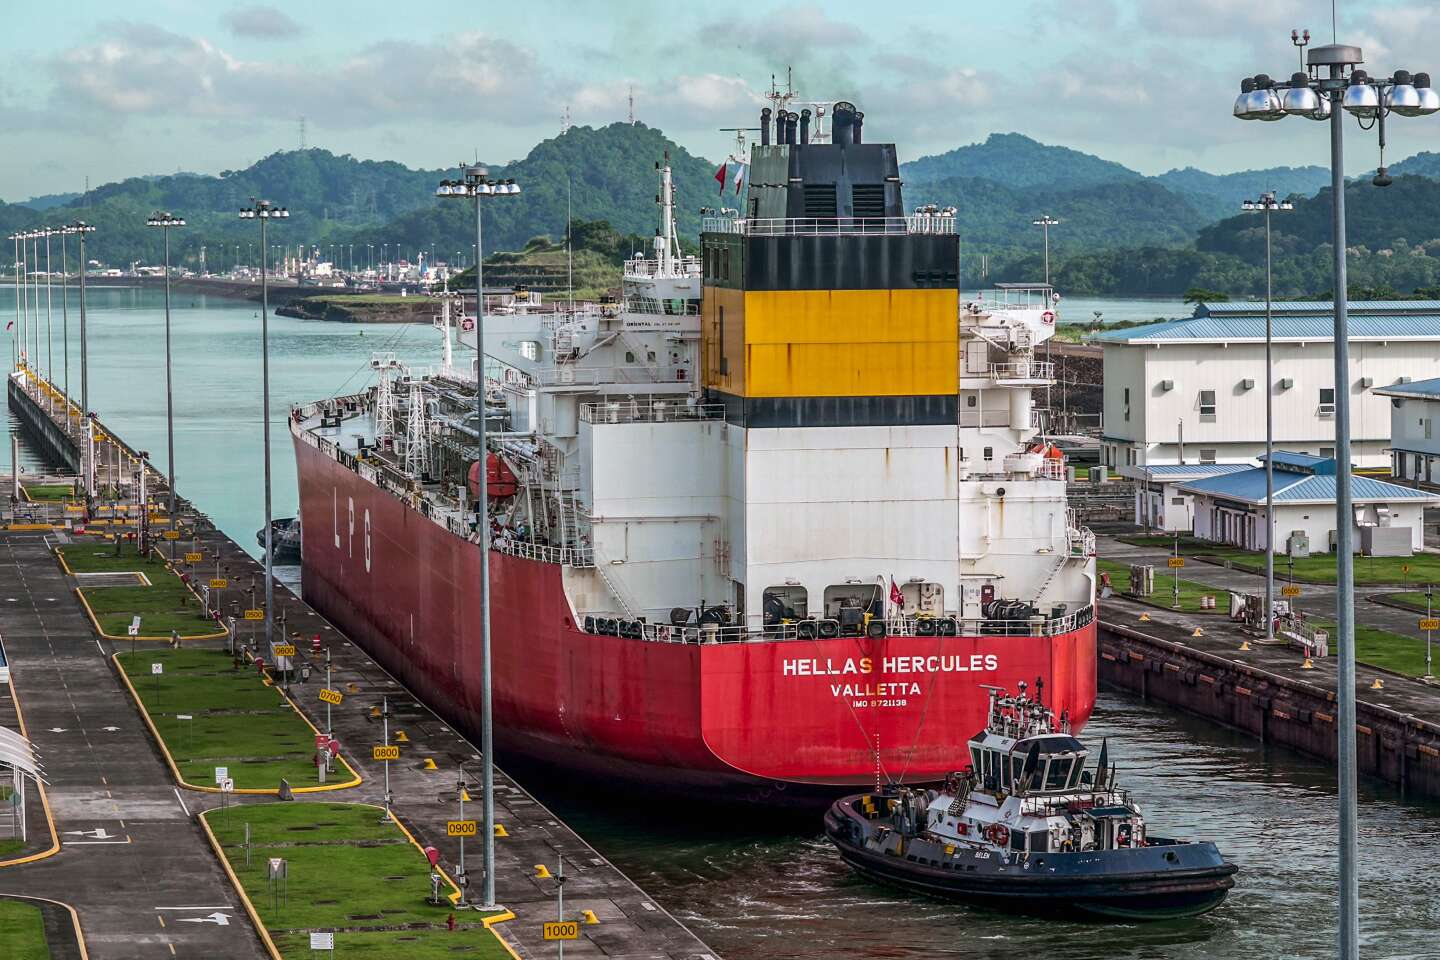 Het Panamakanaal kampt met droogte, waardoor het verkeer al een jaar lang beperkt is